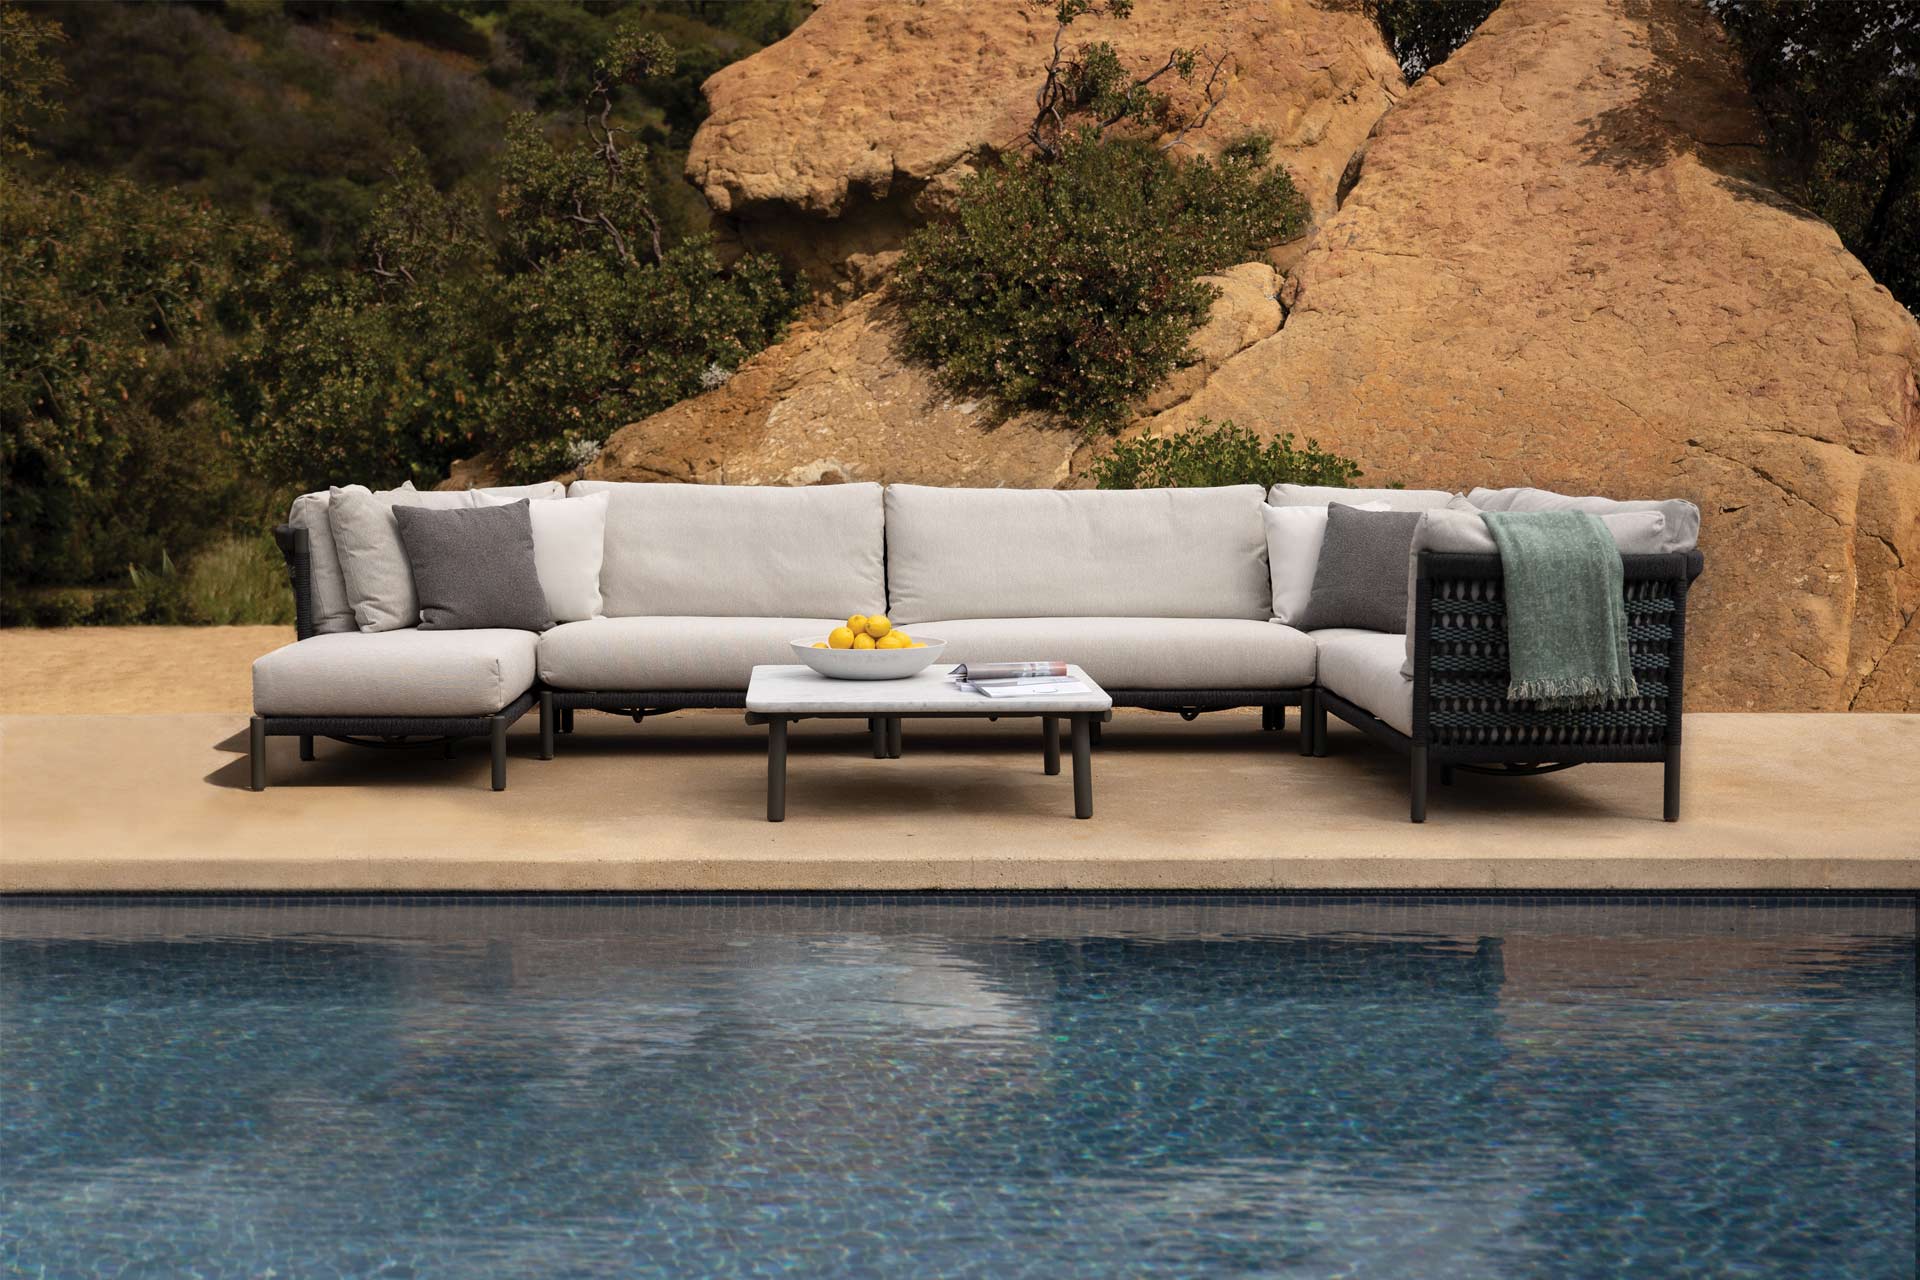 squarerooms find design fair asia janus et cie furniture modern sofa desert poolside outdoor